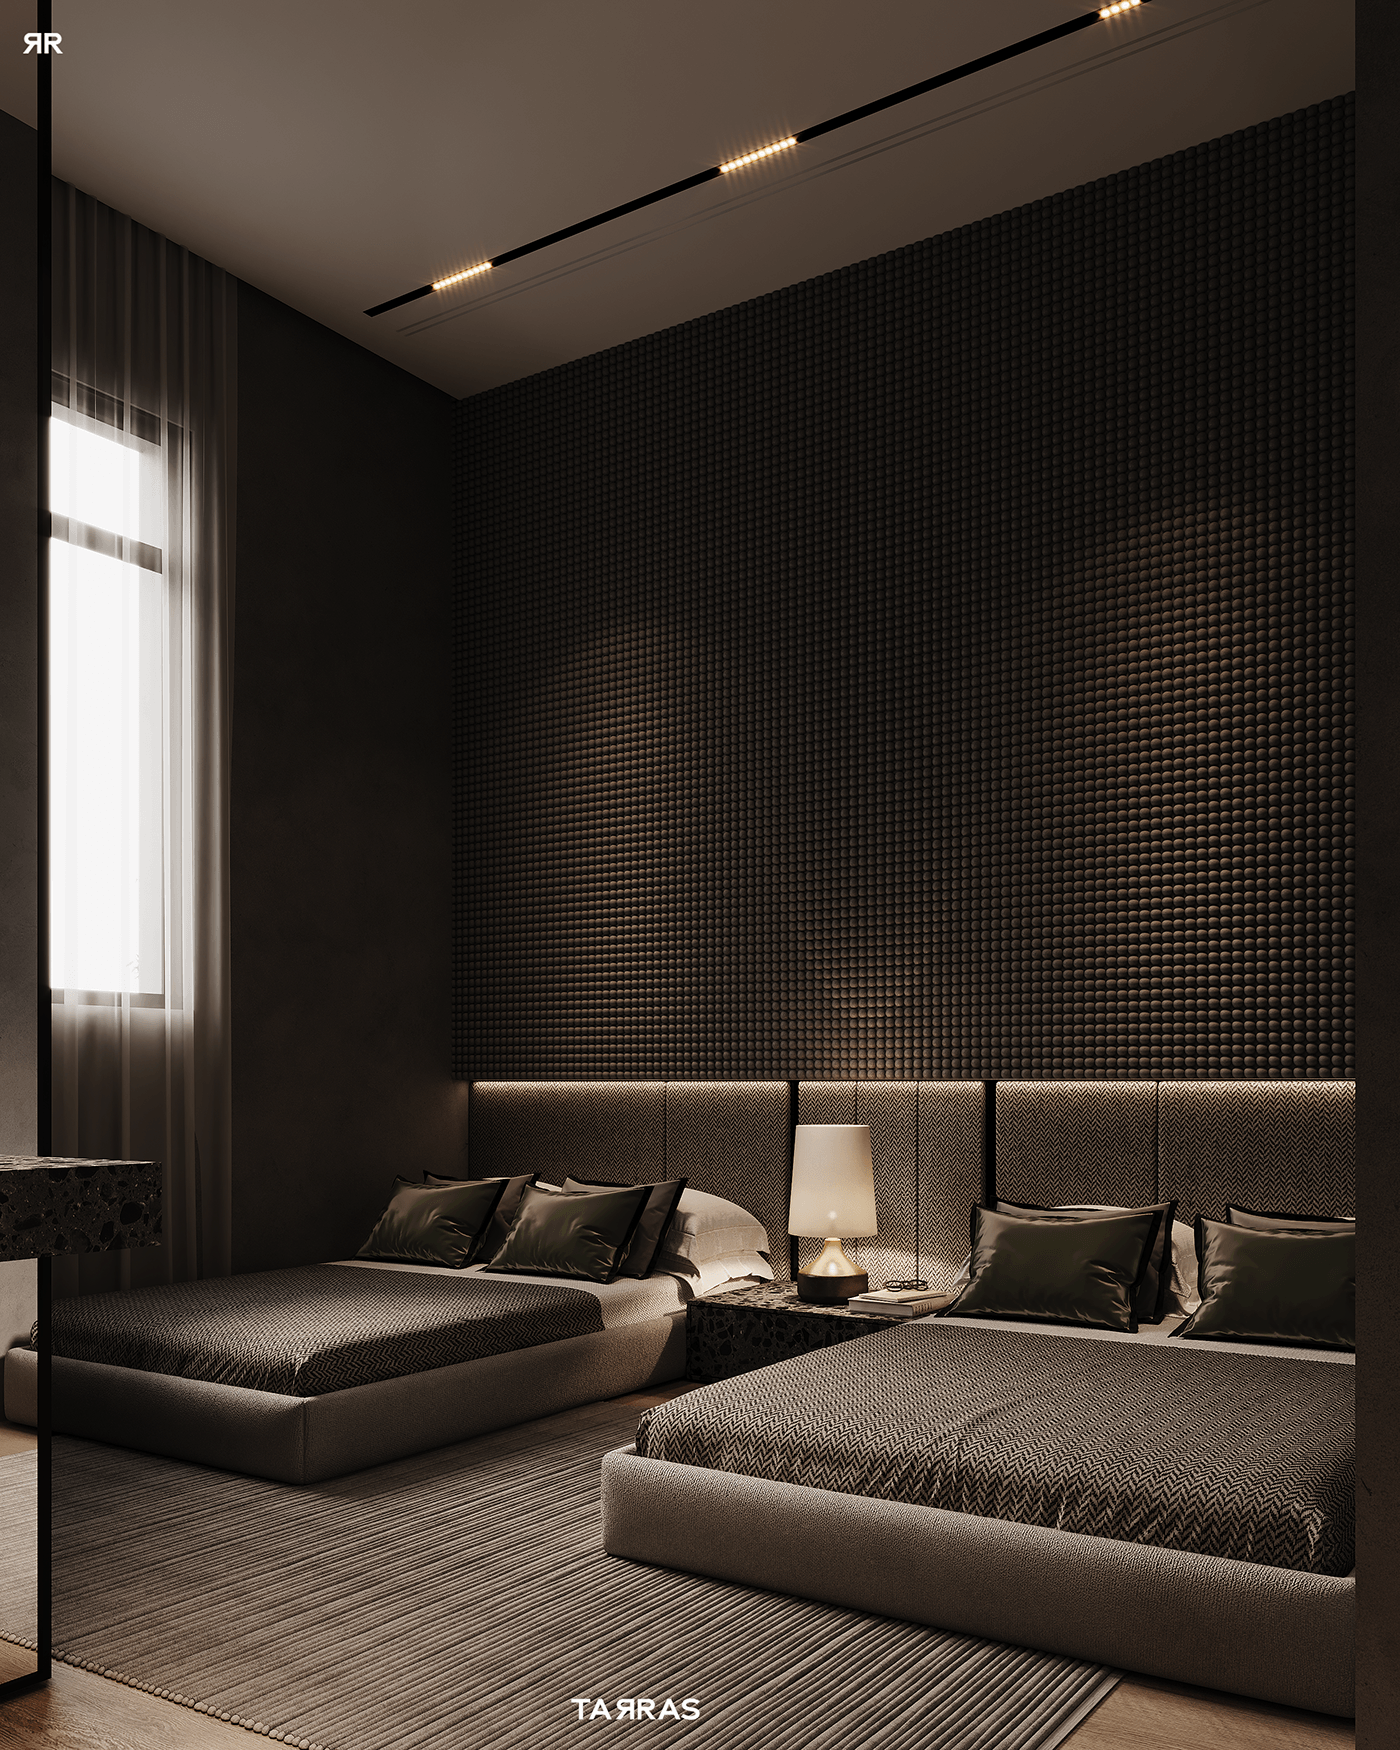 interior design  corona render  3dmax visualization